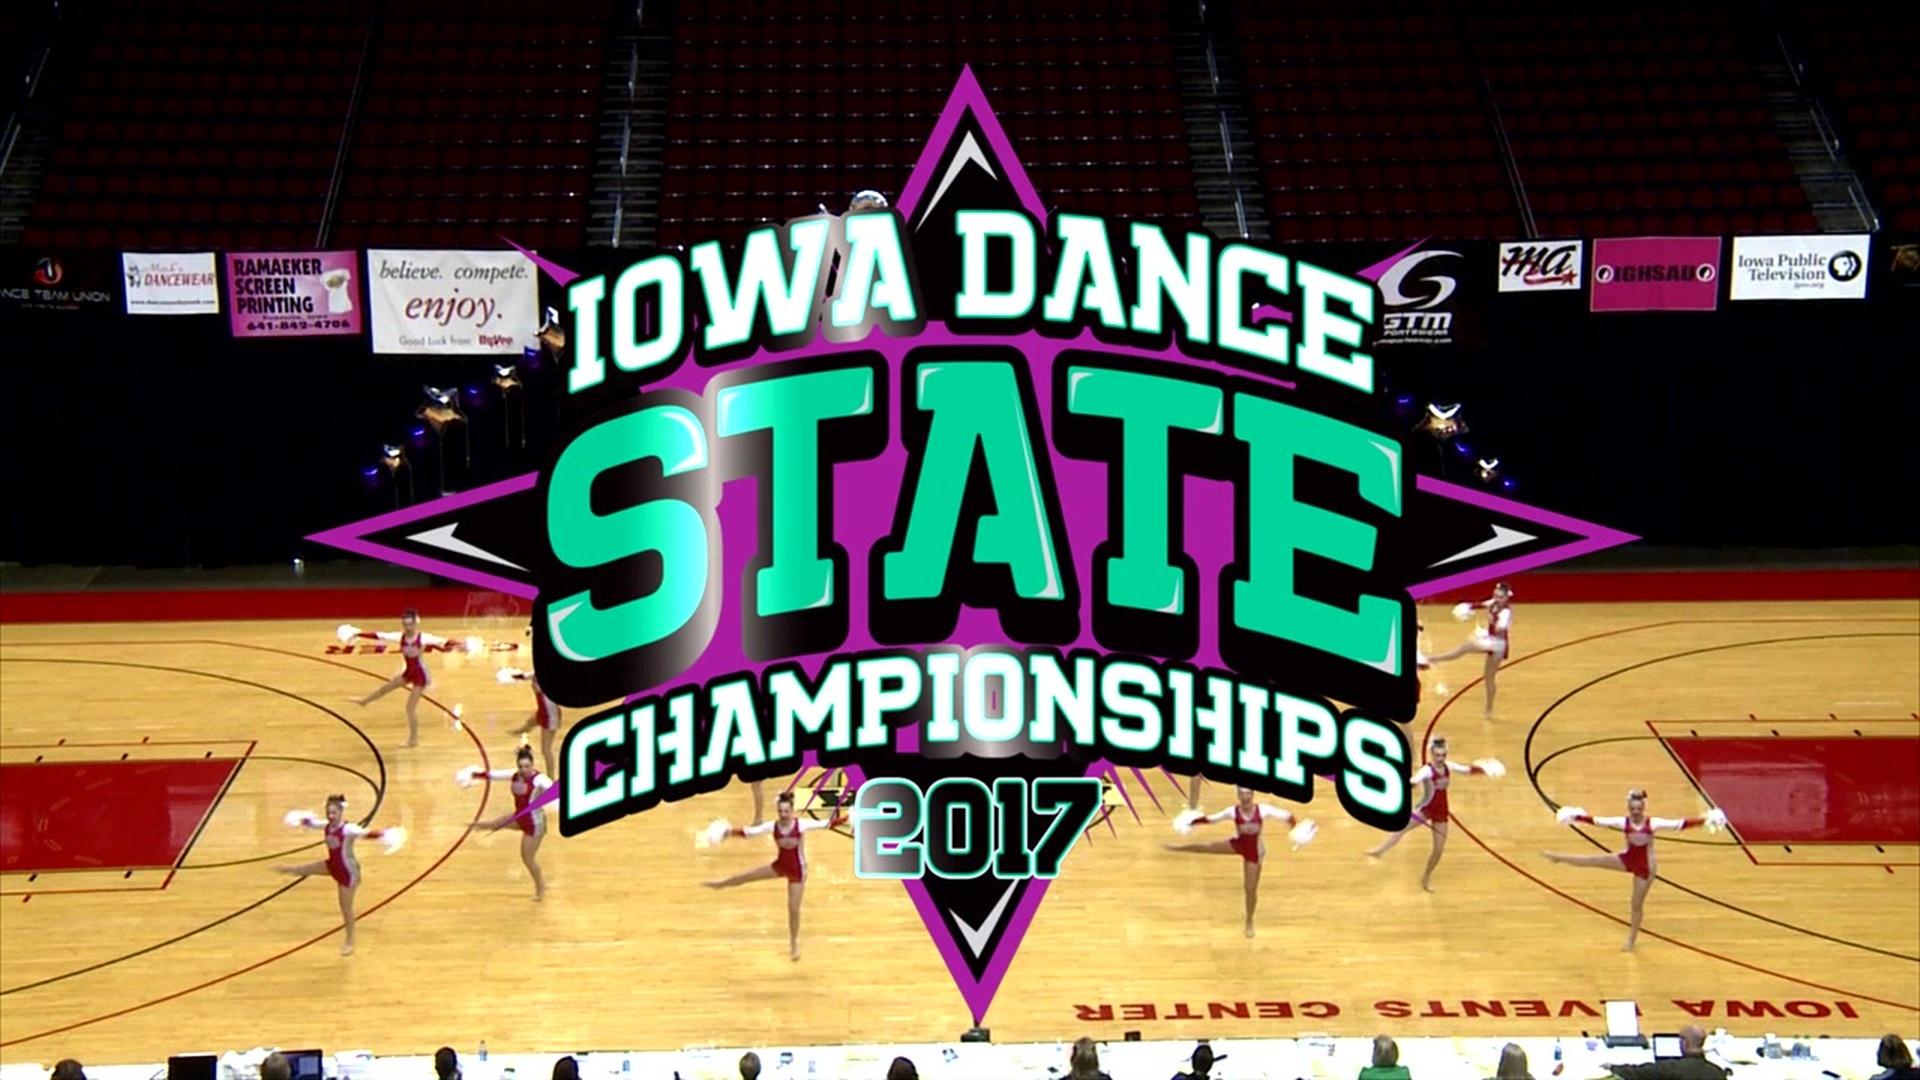 2017 Iowa State Dance Championships Iowa State Dance Championships